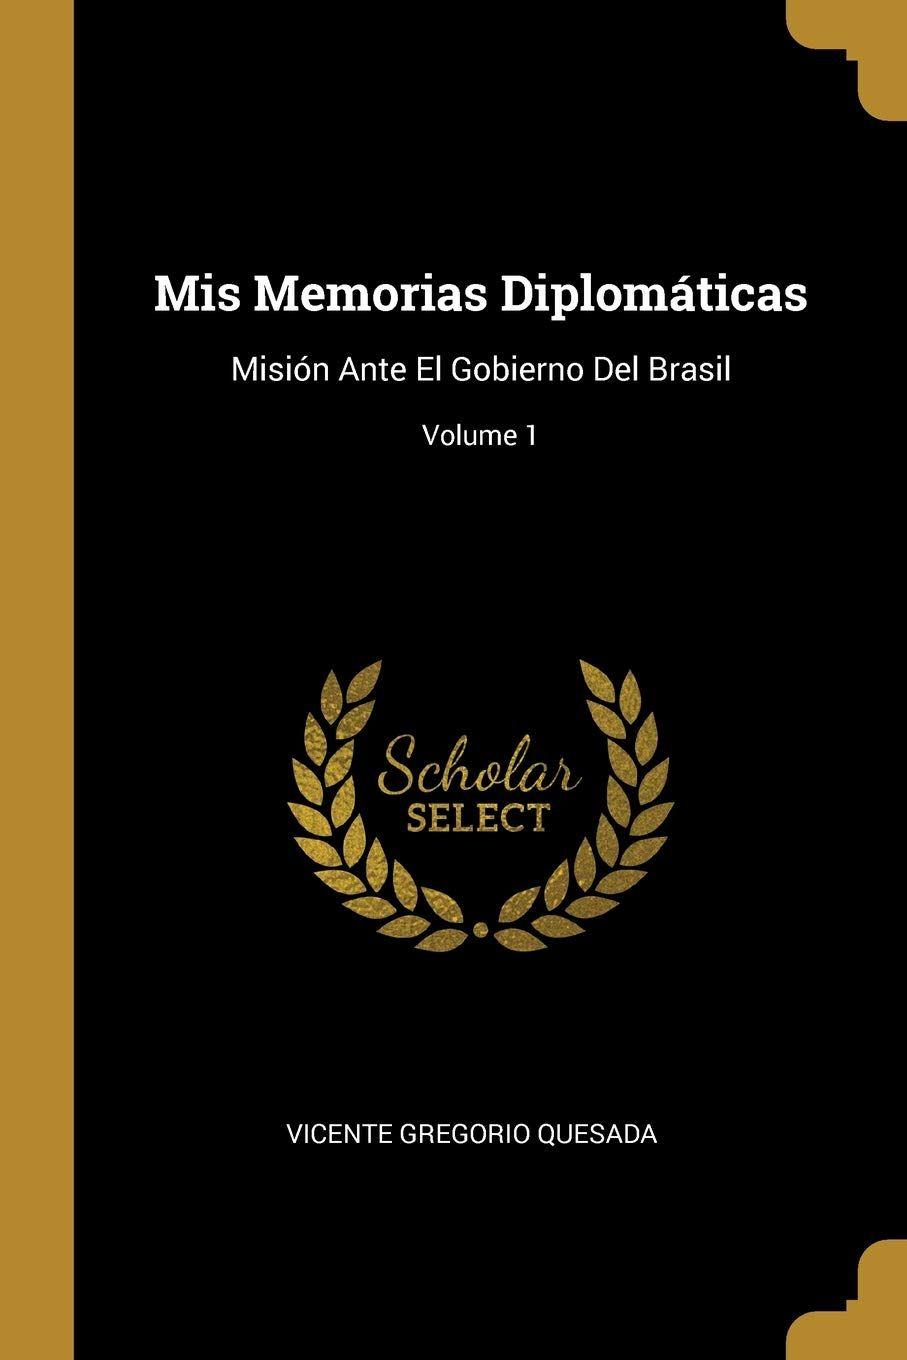 MSN Brasil Logo - MIS Memorias Diplomáticas: Misión Ante El Gobierno del Brasil ...